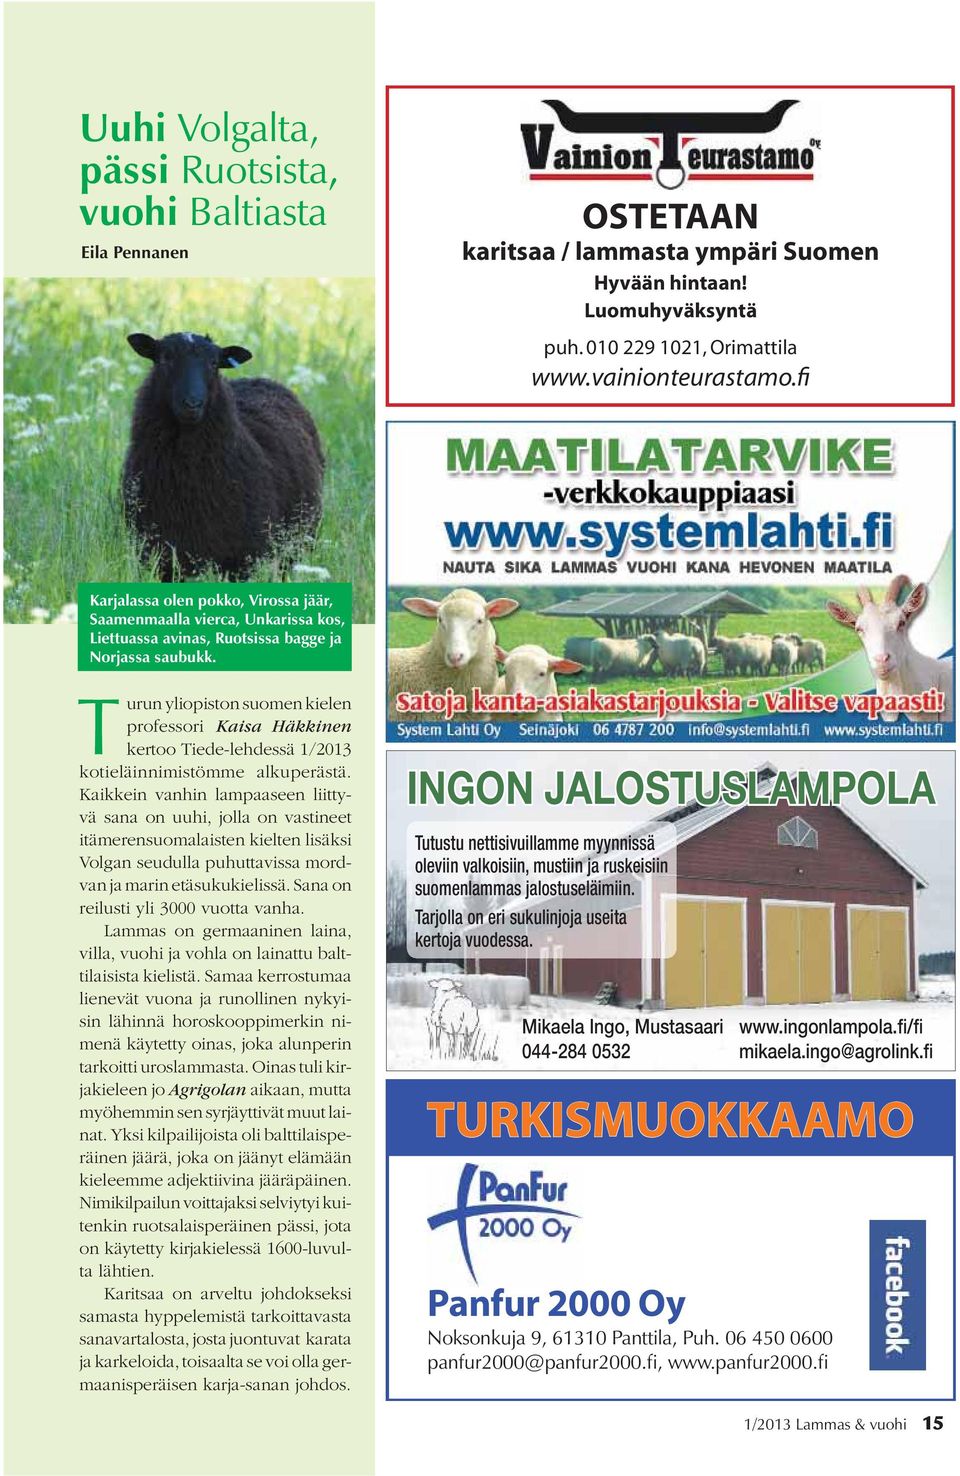 Turun yliopiston suomen kielen professori Kaisa Häkkinen kertoo Tiede-lehdessä 1/2013 kotieläinnimistömme alkuperästä.